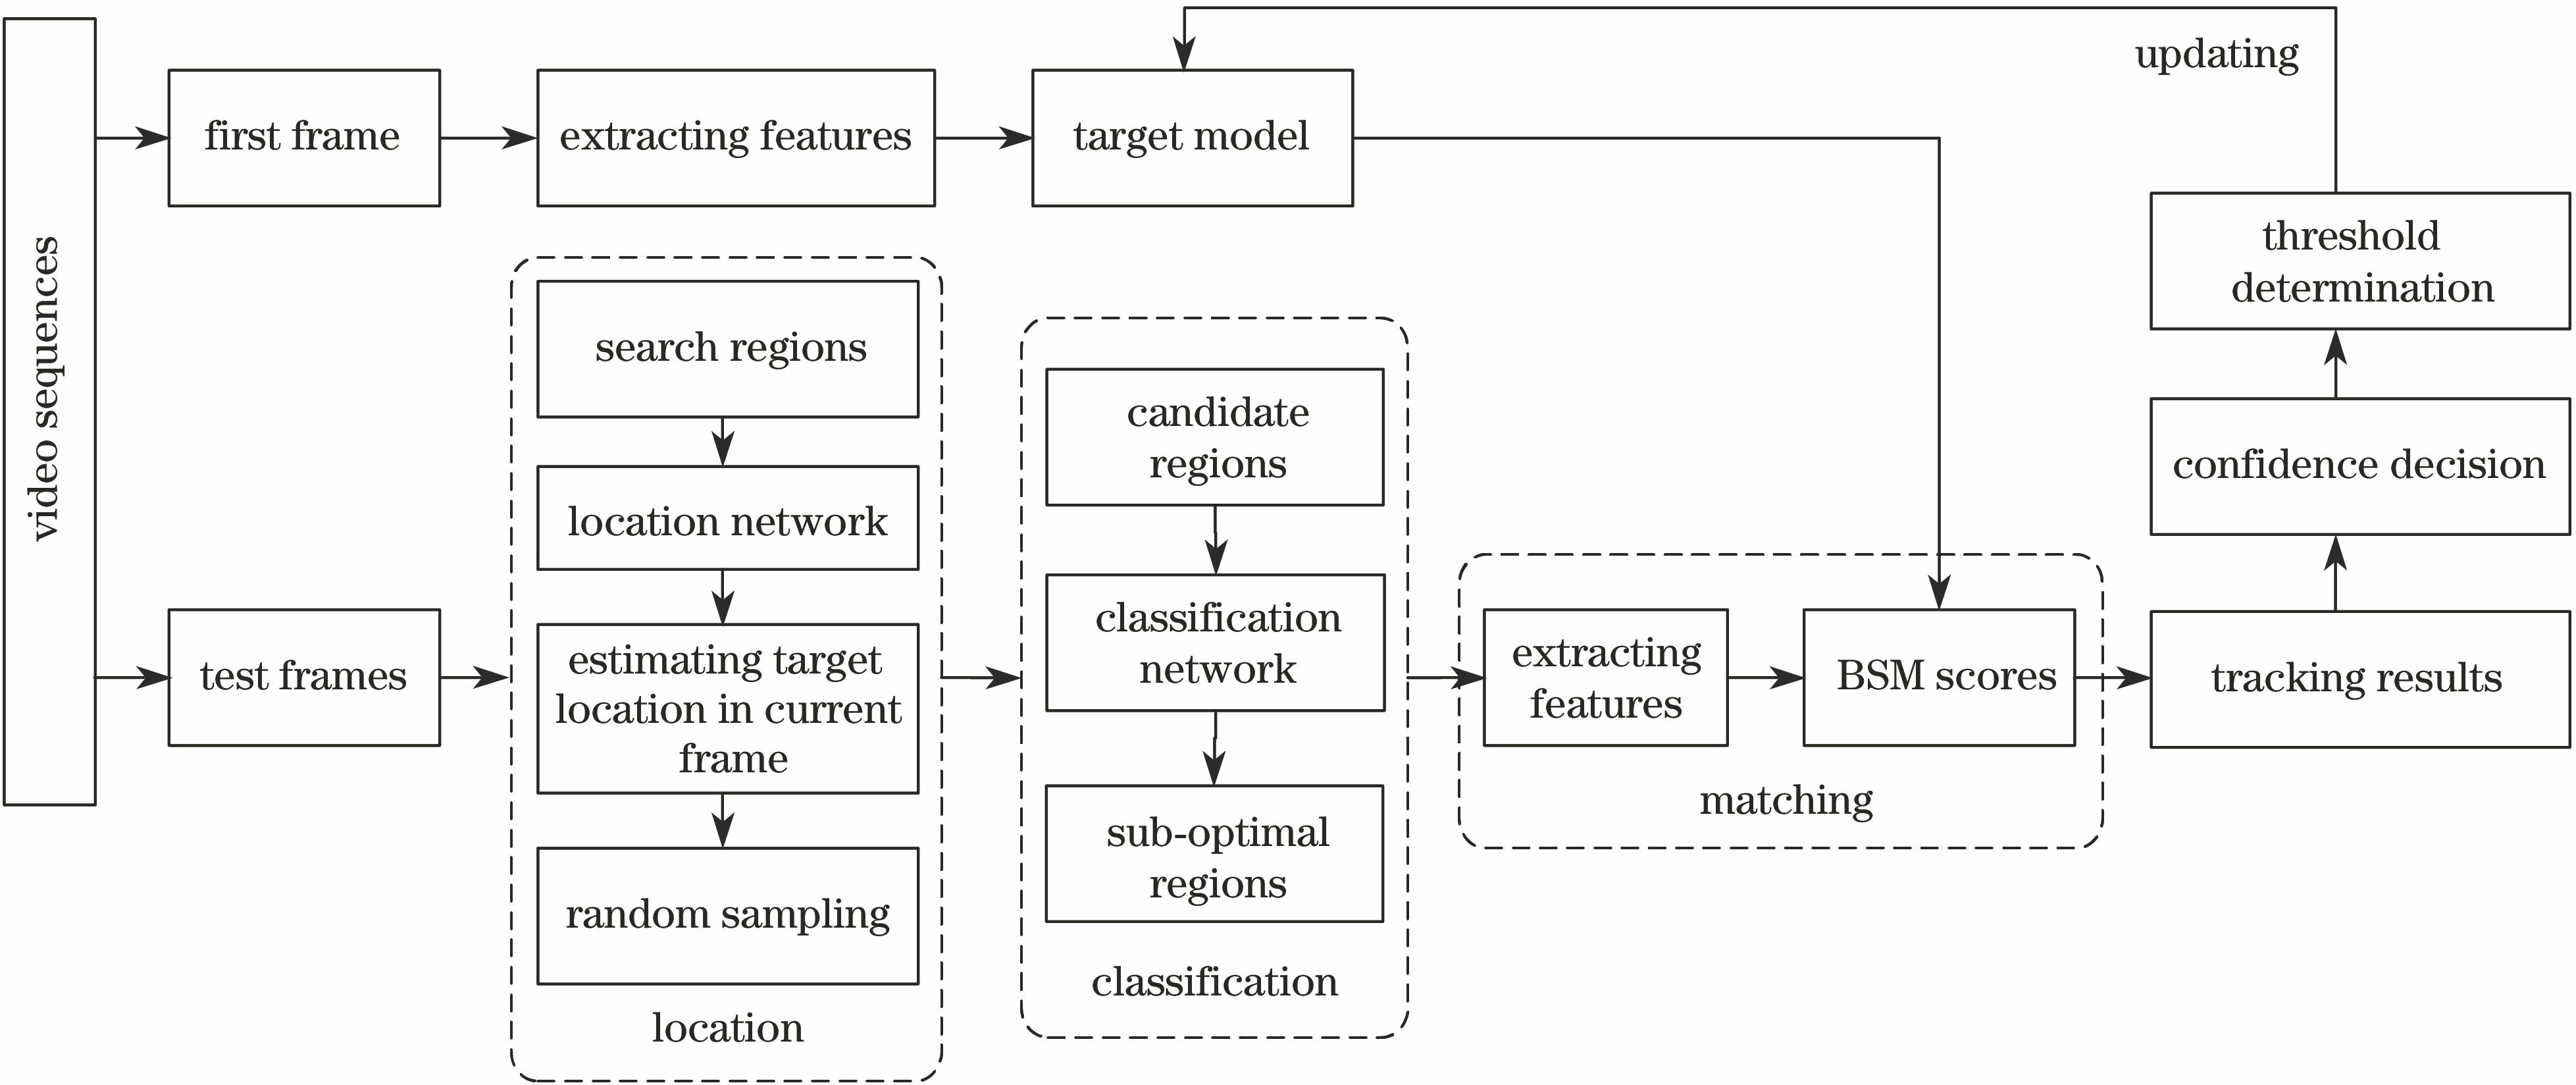 Overall framework of LCM model